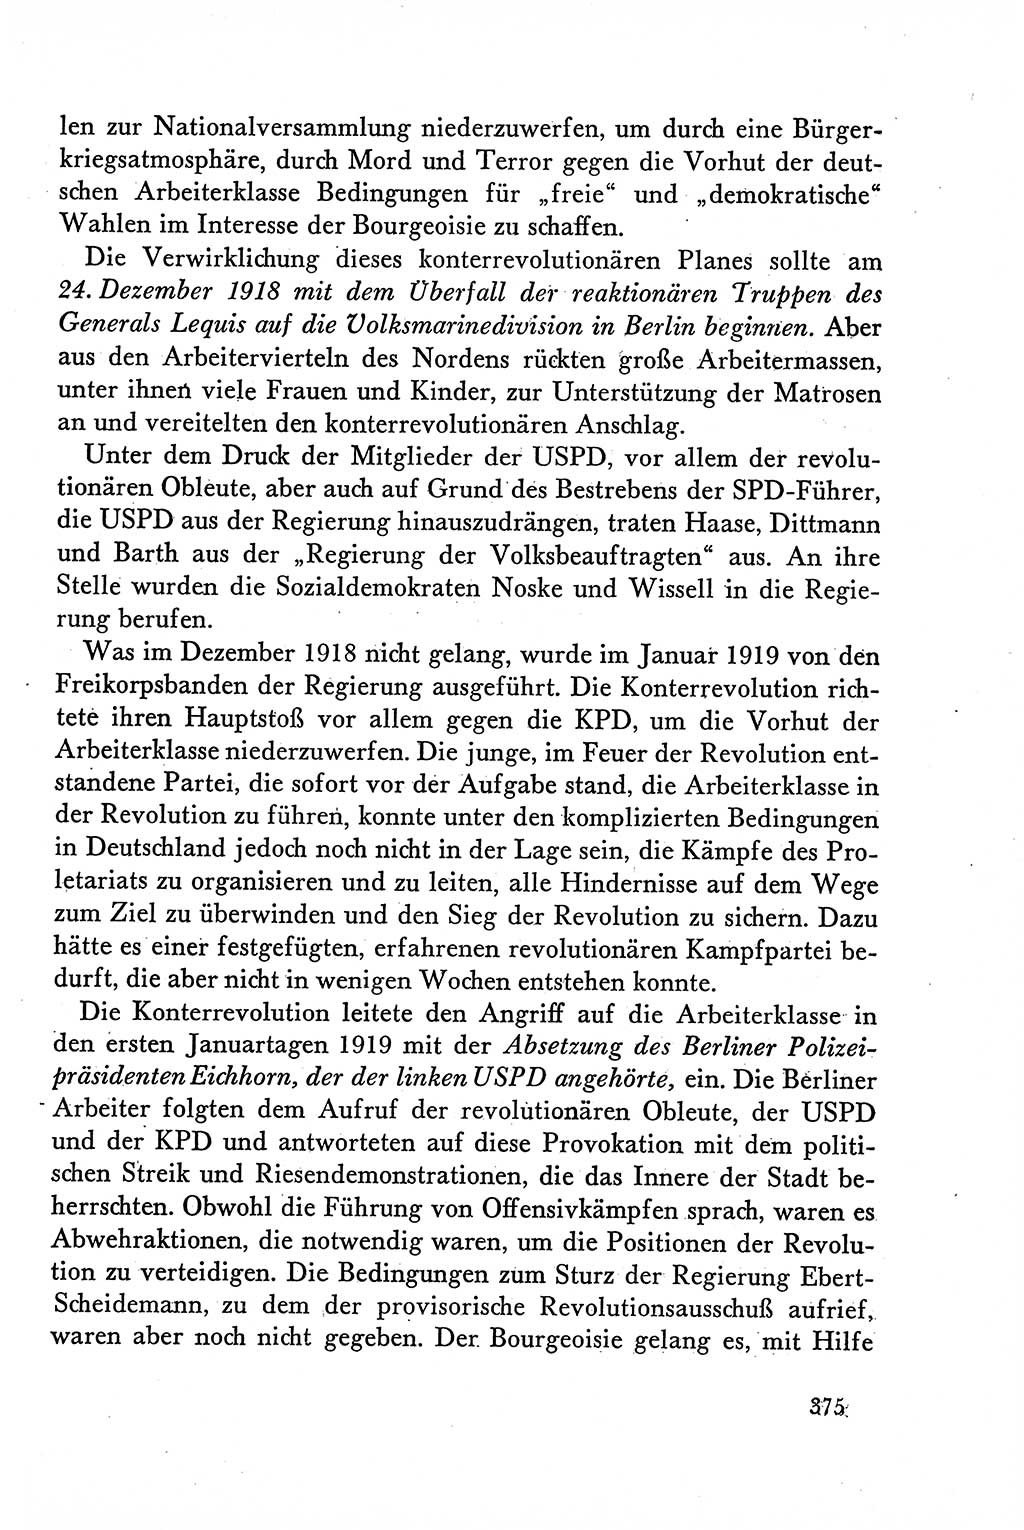 Dokumente der Sozialistischen Einheitspartei Deutschlands (SED) [Deutsche Demokratische Republik (DDR)] 1958-1959, Seite 375 (Dok. SED DDR 1958-1959, S. 375)